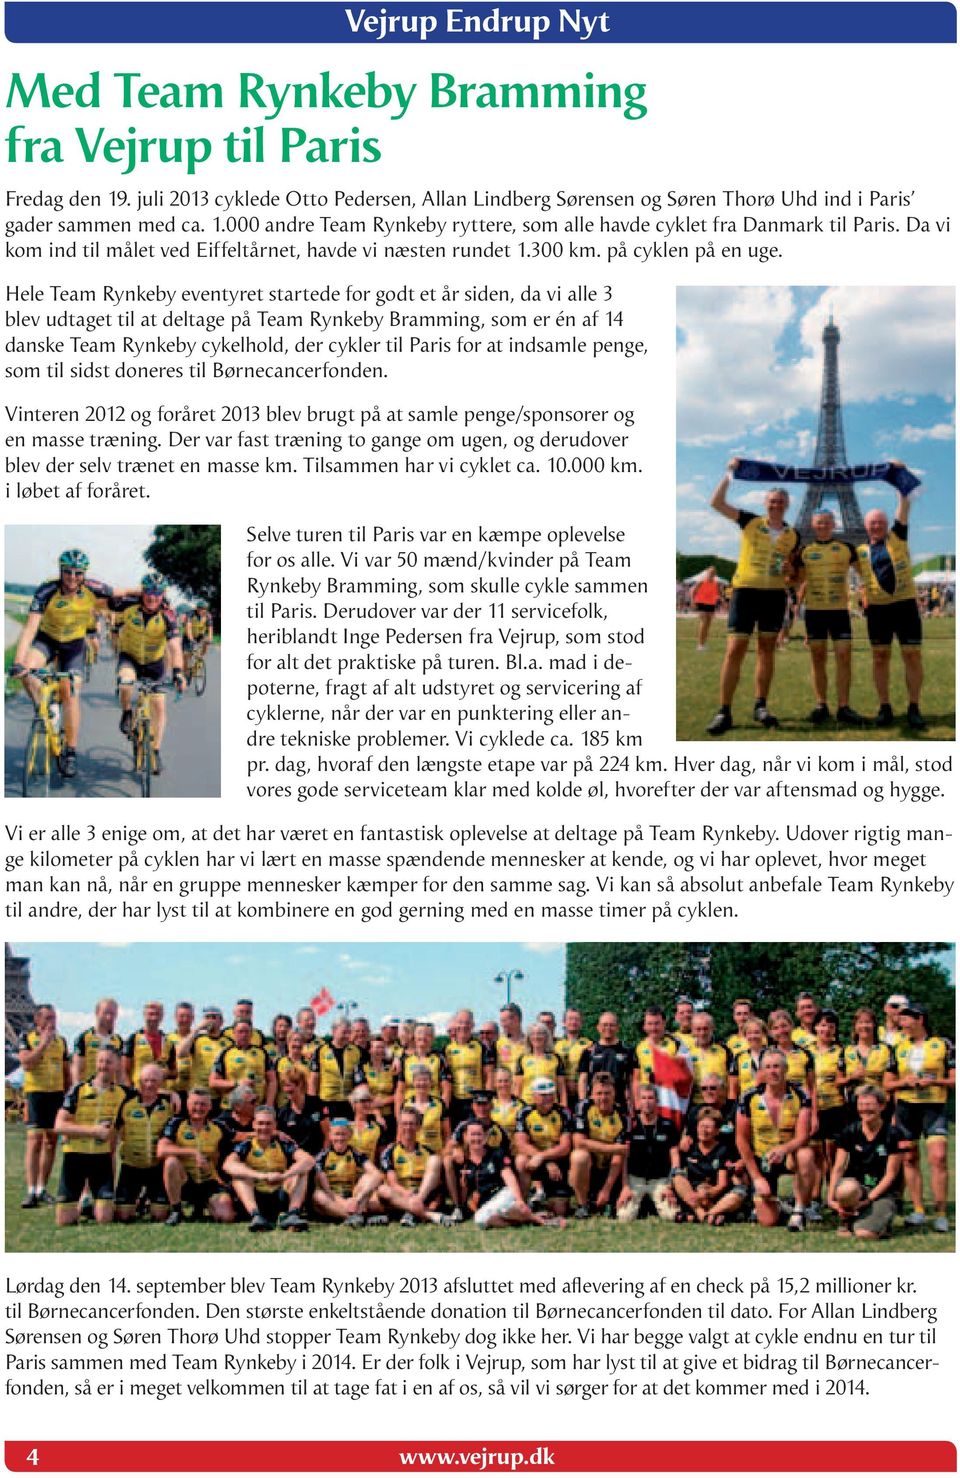 Hele Team Rynkeby eventyret startede for godt et år siden, da vi alle 3 blev udtaget til at deltage på Team Rynkeby Bramming, som er én af 14 danske Team Rynkeby cykelhold, der cykler til Paris for